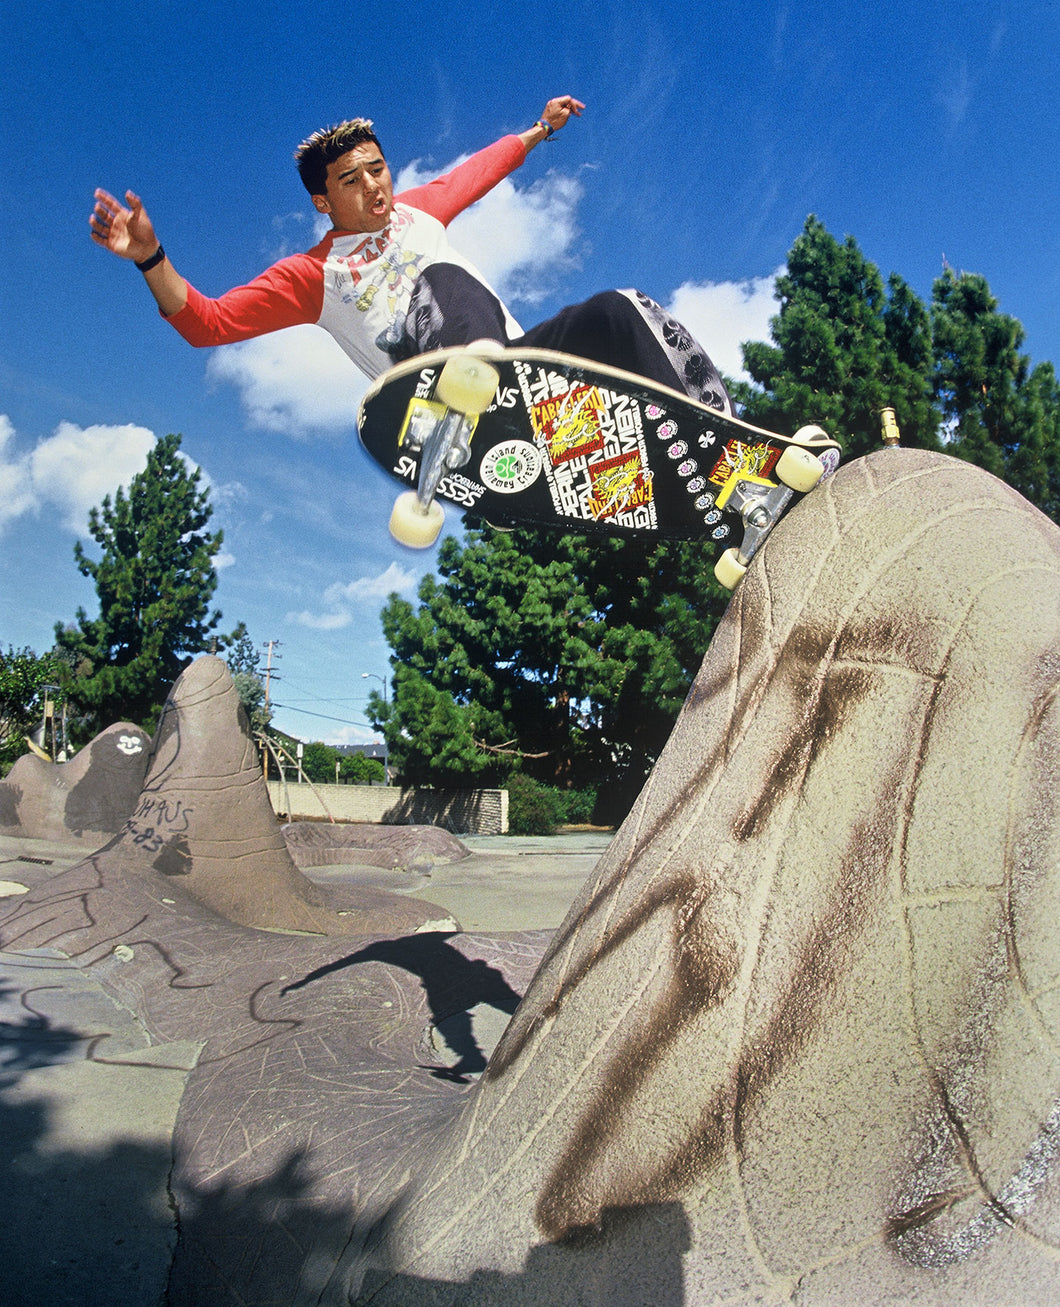 Steve Caballero Frontside Grind 80s Skateboarding Photo